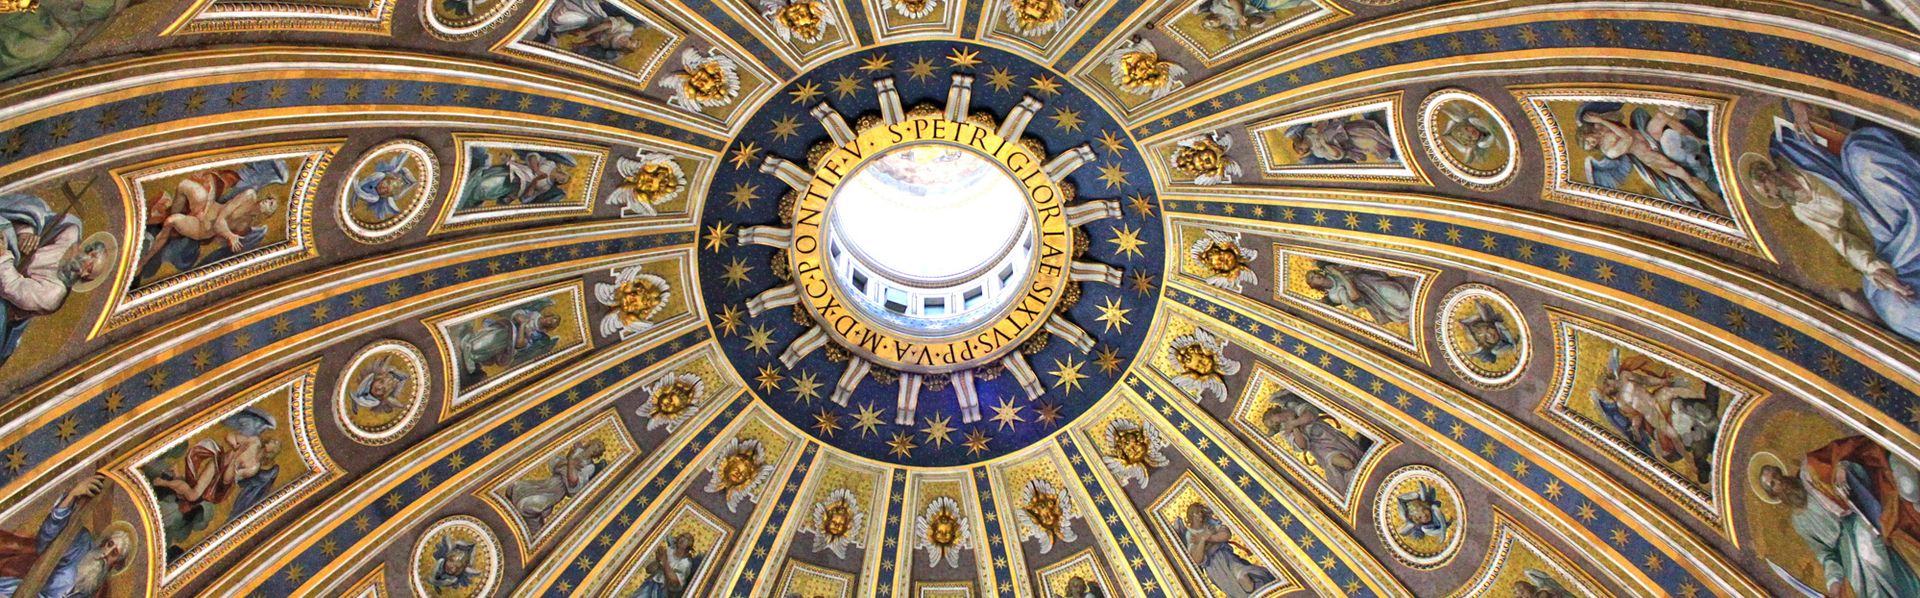 La coupole de la Basilique Saint-Pierre à Rome. [Open Mind Pictures - Fotolia]